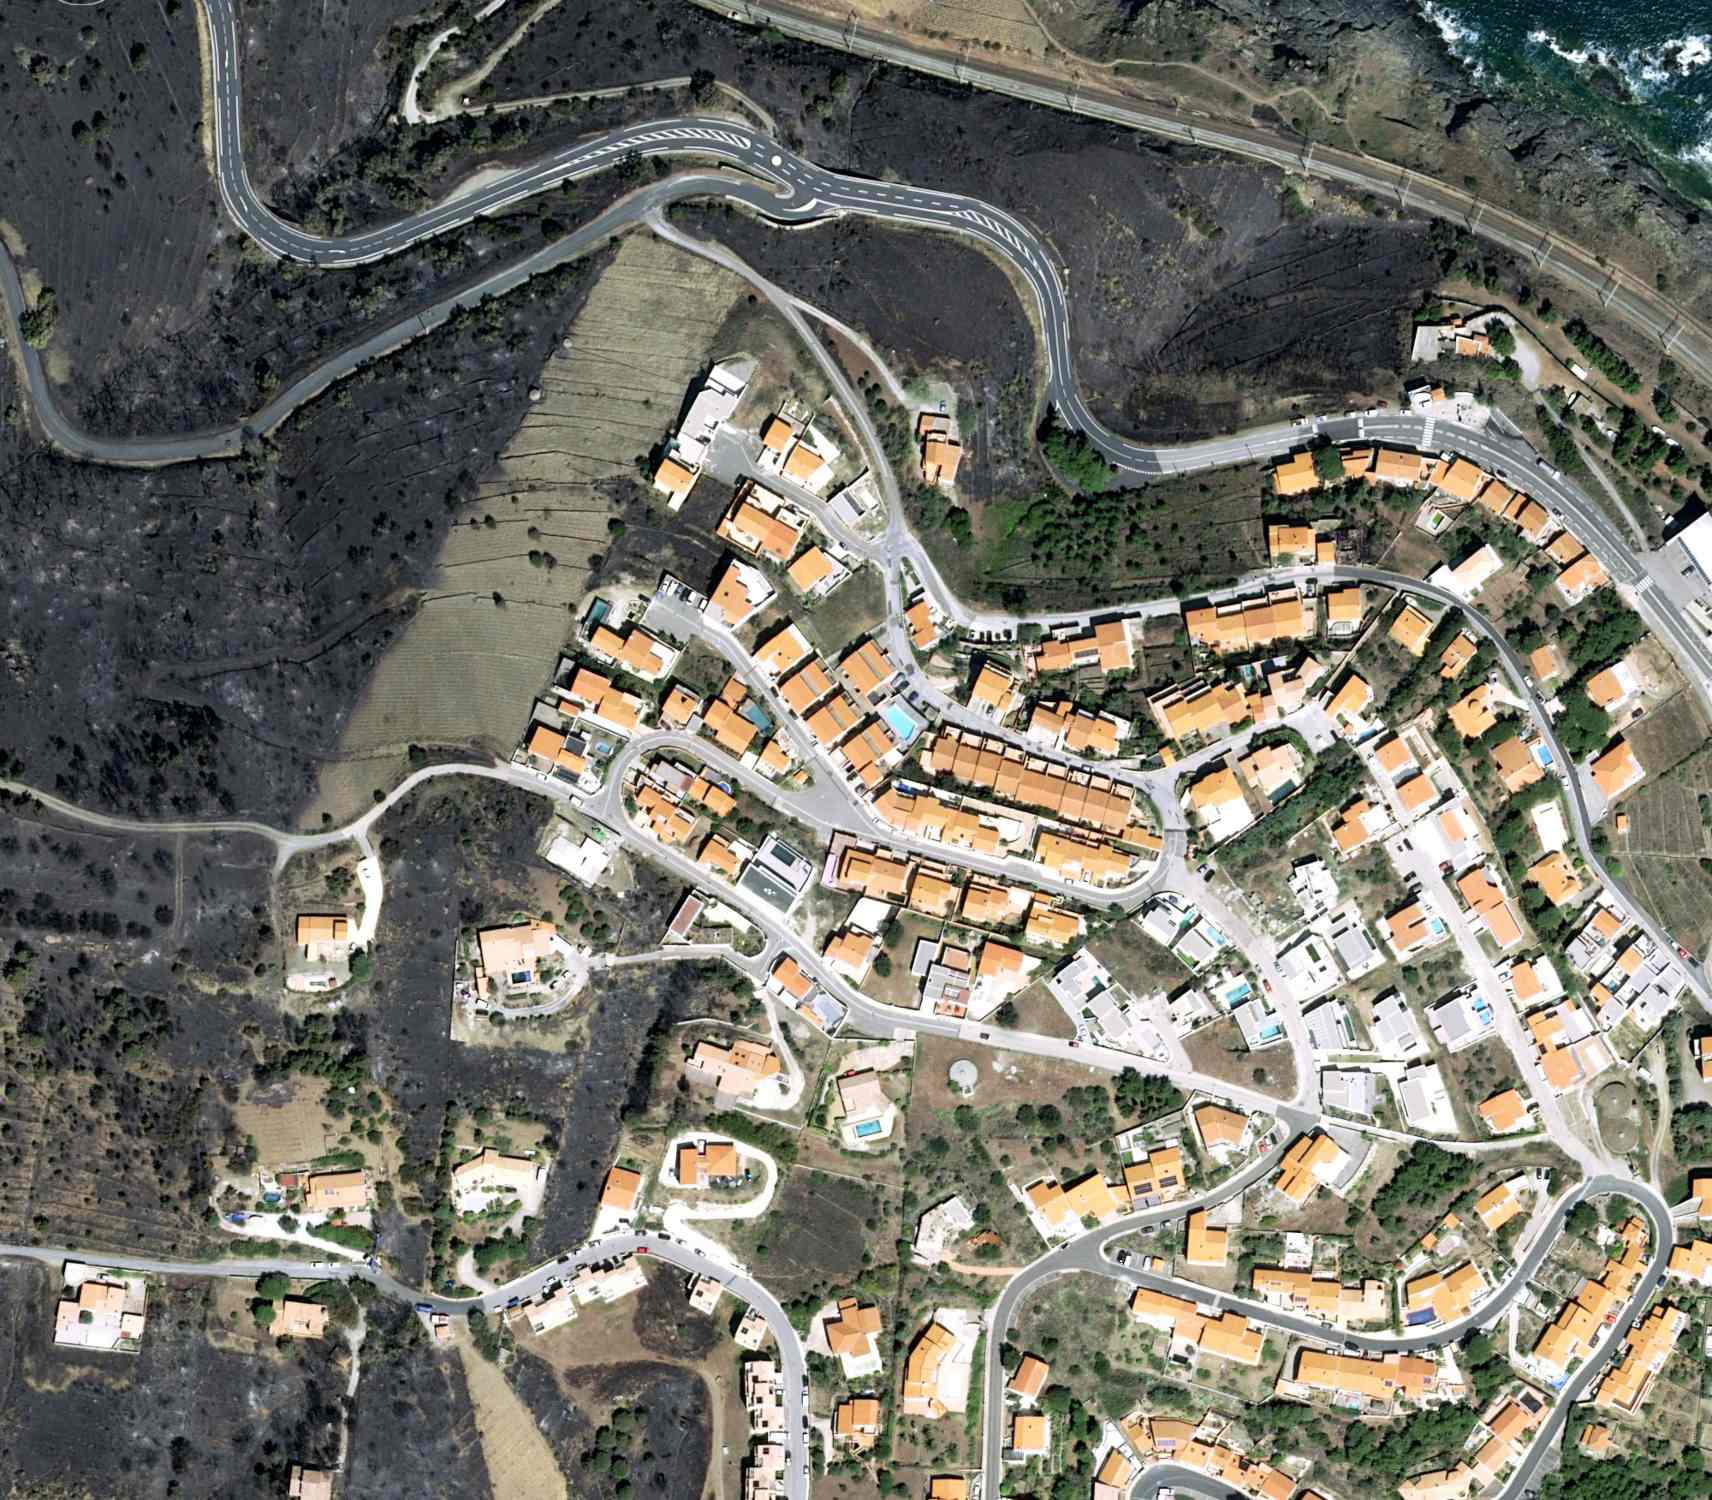 Impressionants imatges satèl·lit de l’incendi de la Catalunya Nord: el foc a tocar de les cases